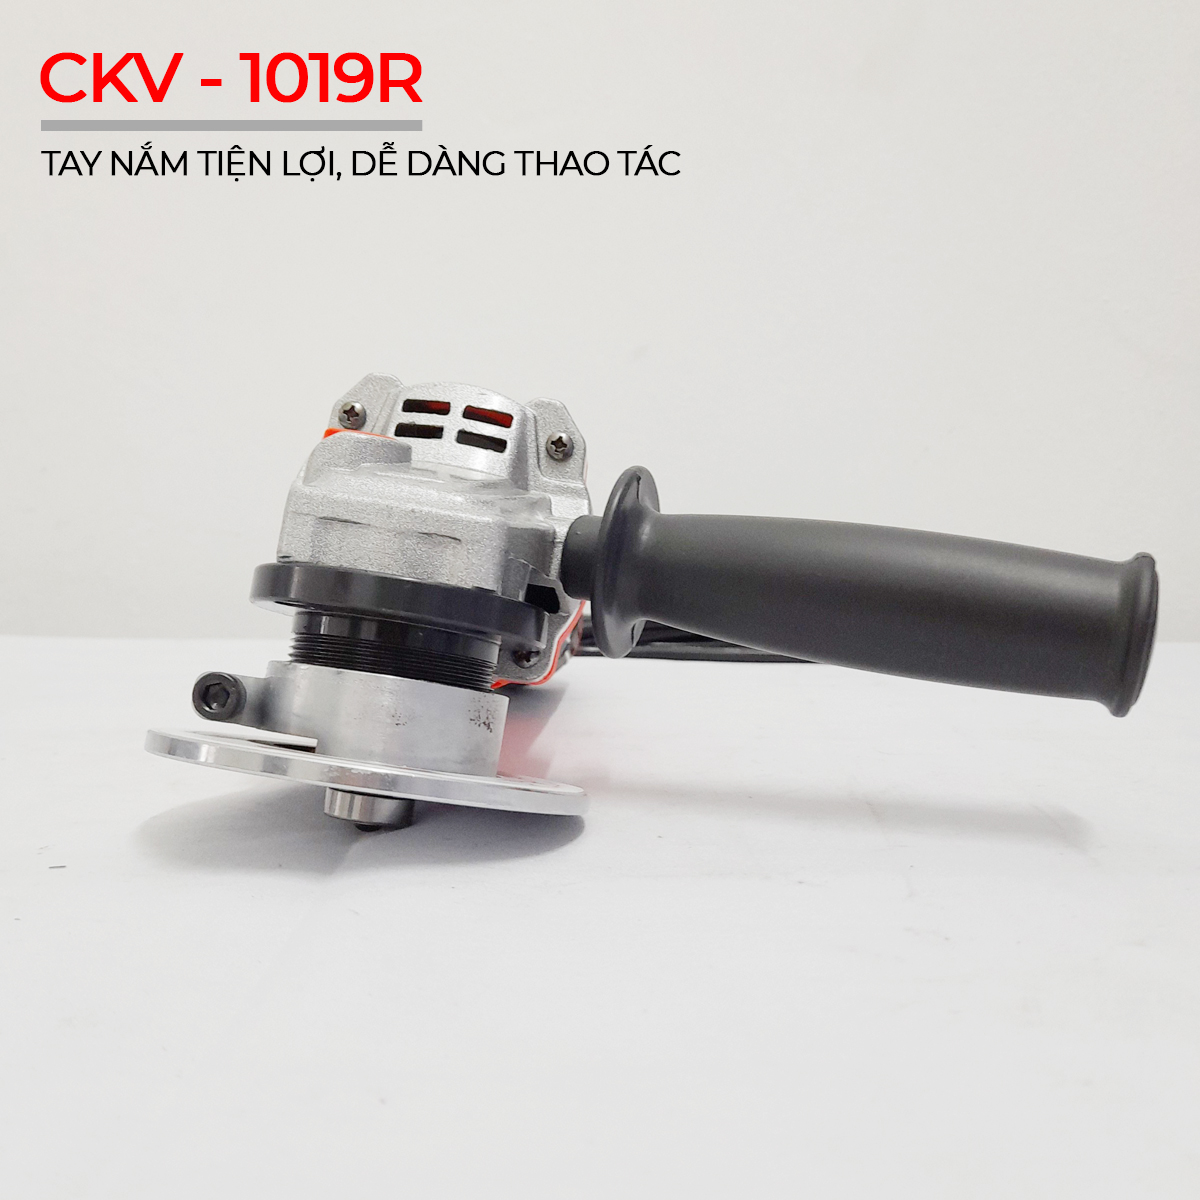 Hình ảnh thực tế sản phẩm CKV-1019R 3